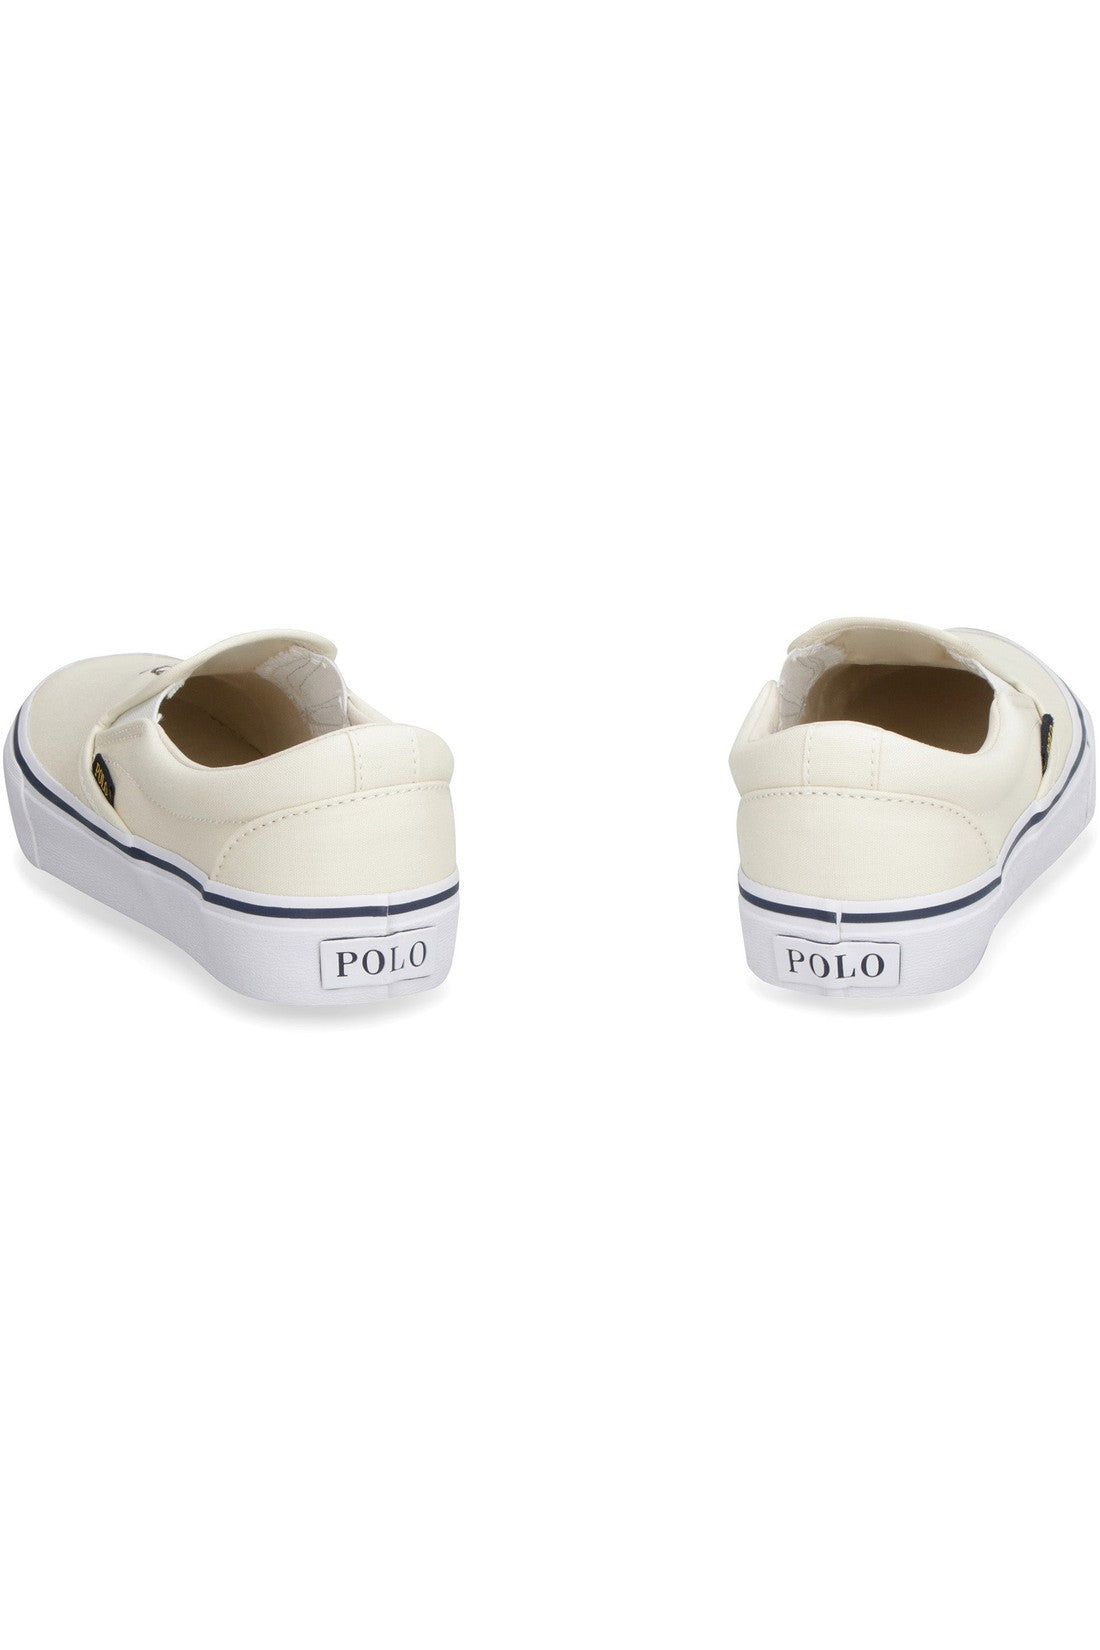 Polo Ralph Lauren-OUTLET-SALE-Canvas slip-on sneakers-ARCHIVIST